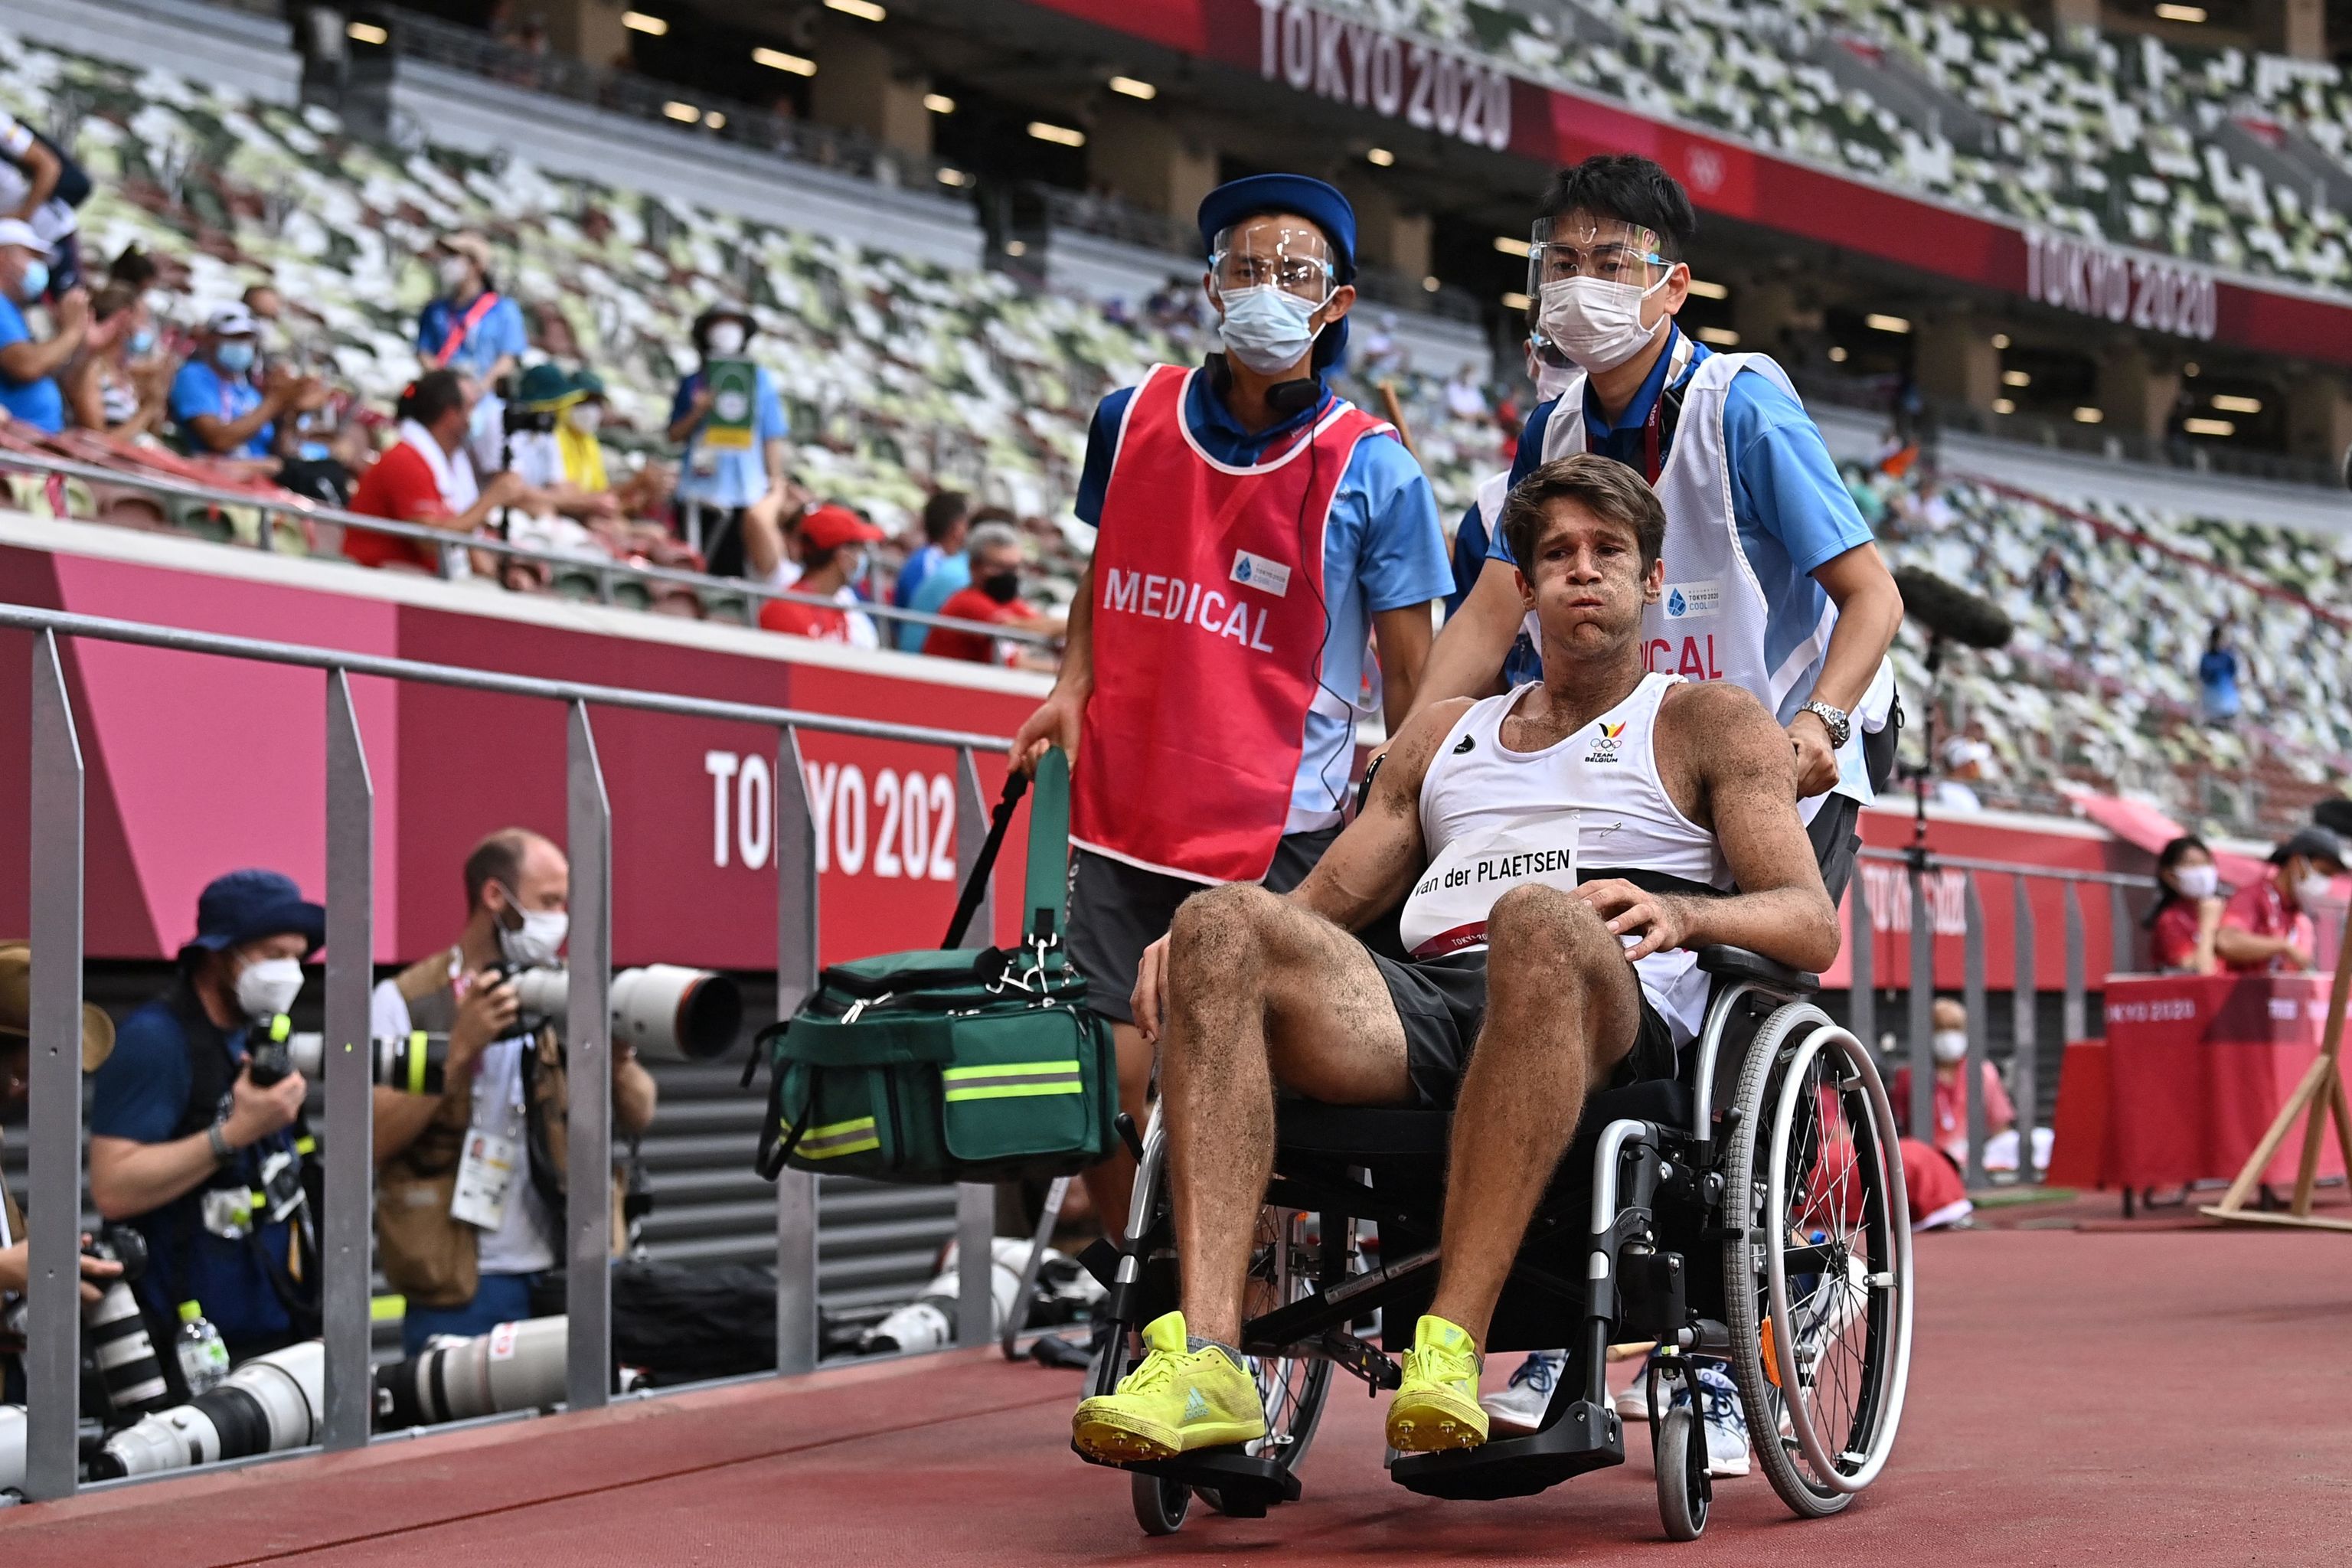 El belga Van der Plaetsen abandona el estadio en silla de ruedas.